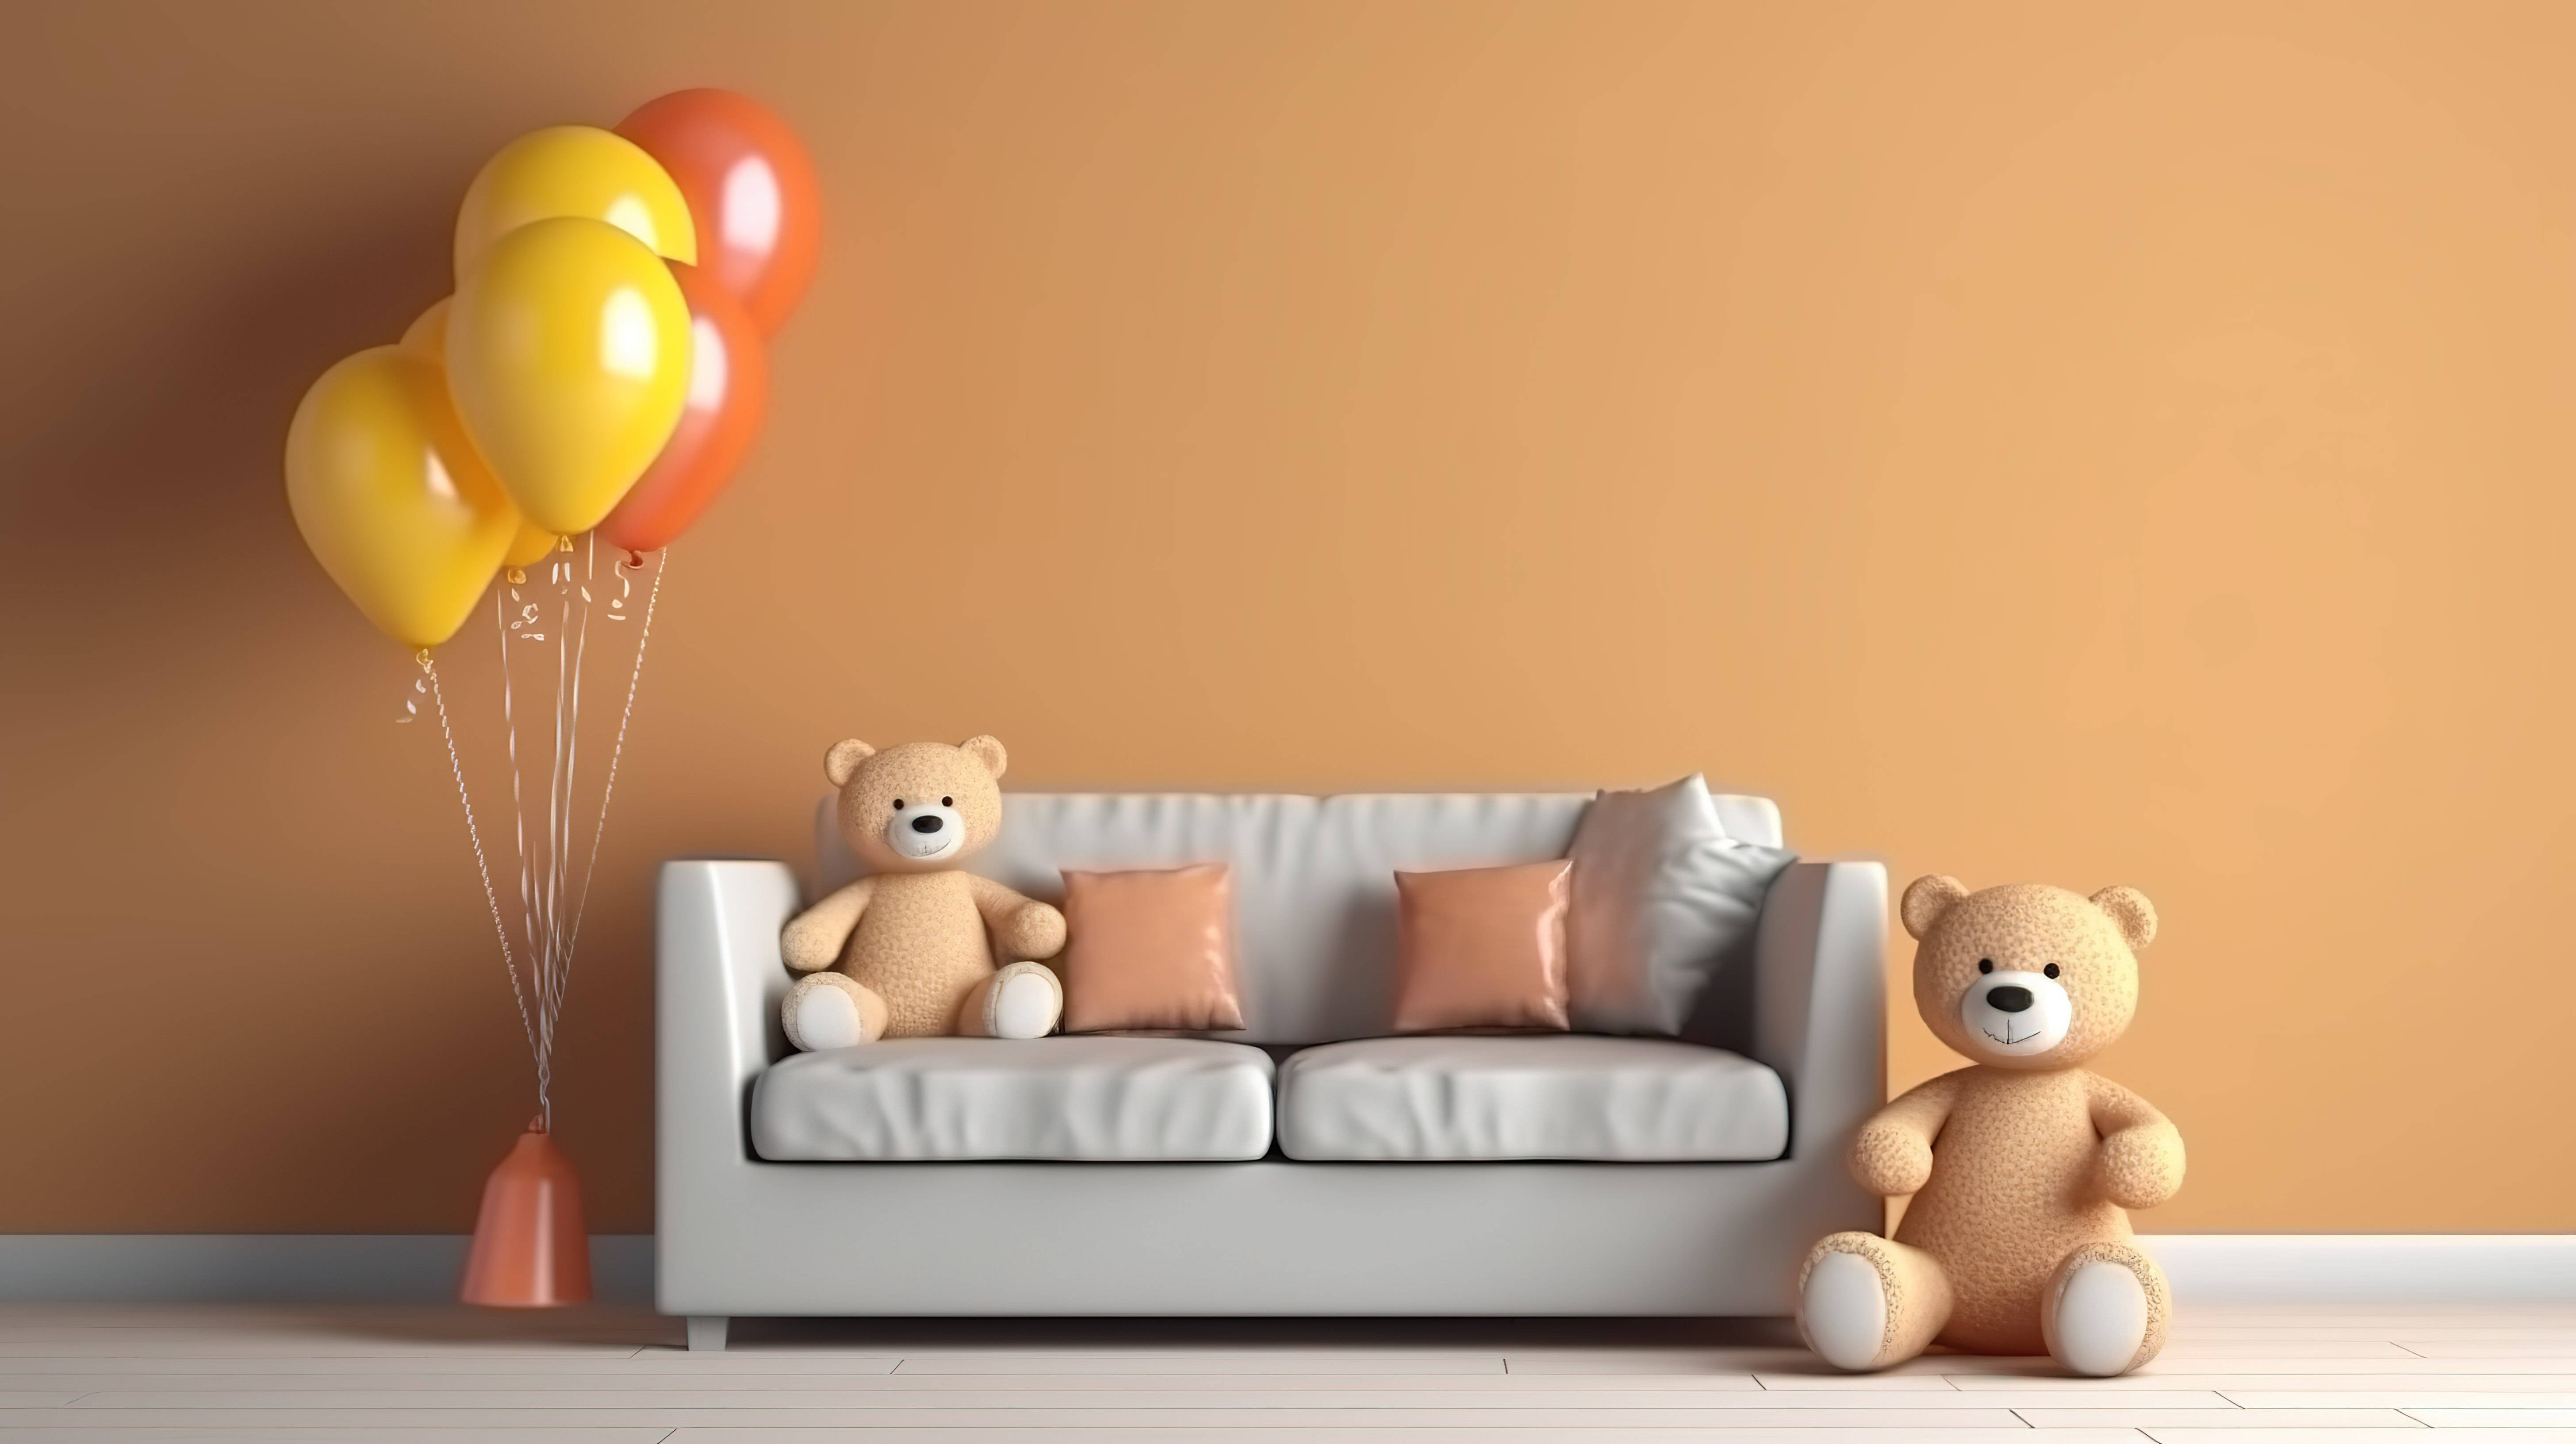 毛绒驯鹿和熊娃娃舒适地躺在沙发上，而气球则为 3D 渲染的儿童房间增添了一丝乐趣图片